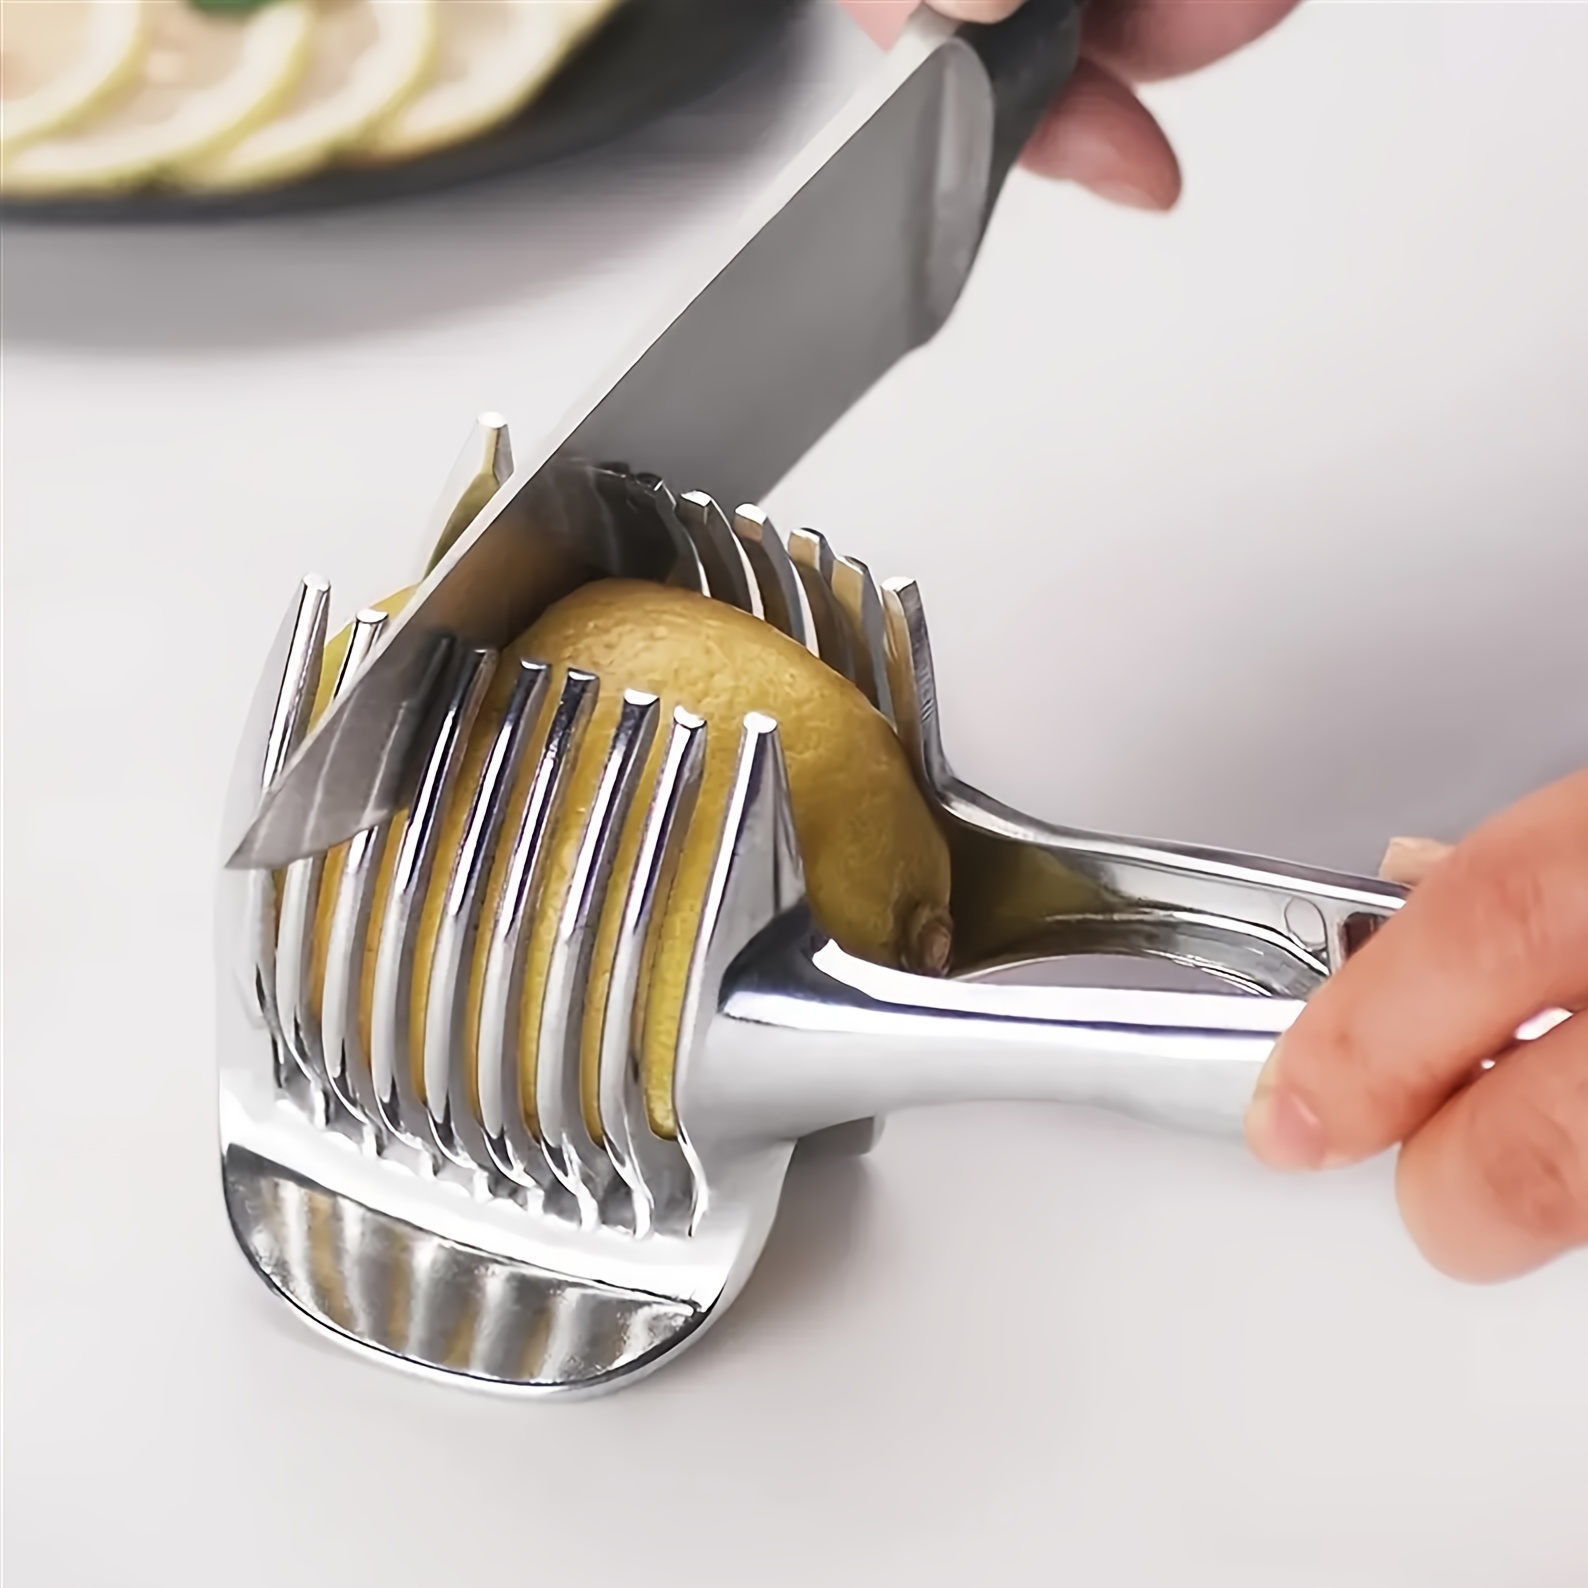 Cortador de cebolla de acero inoxidable, utensilio para cortar